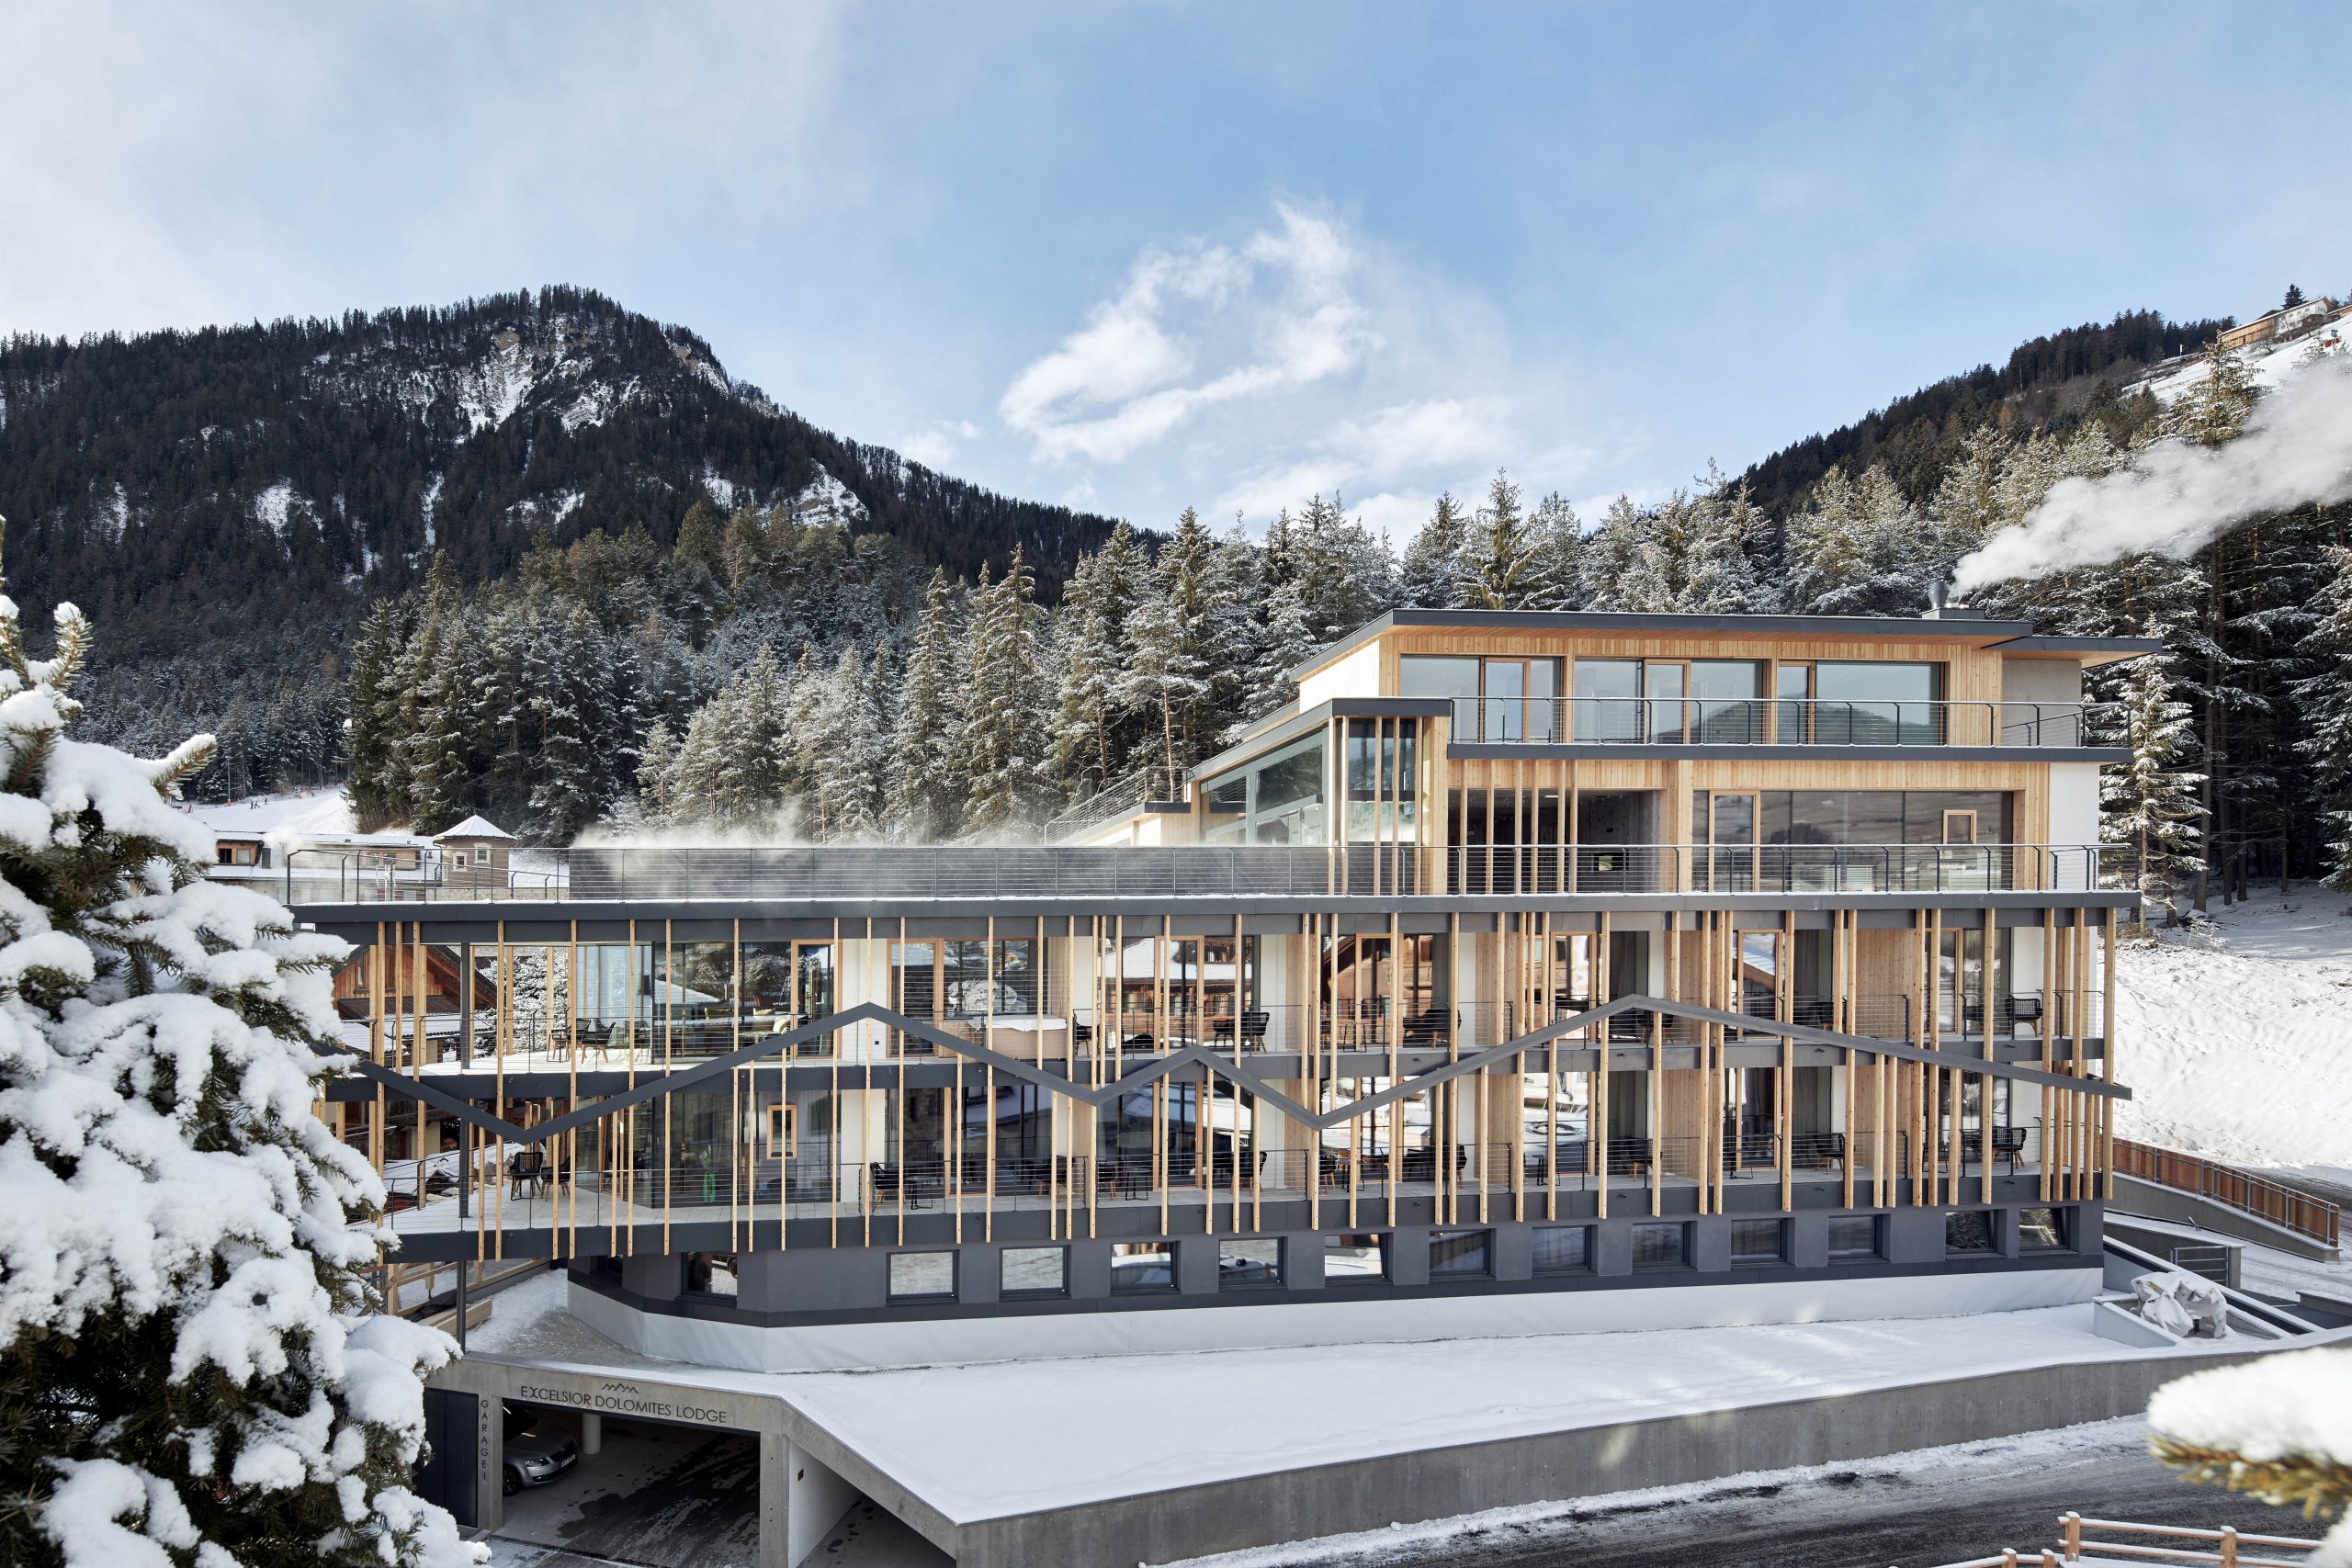 Sorge sulle piste del Plan de Corones e della Sellaronda, l’Excelsior Dolomites Life Resort di San Viglio di Marebbe (BZ), che offre servizi speciali per gli sciatori e 2.500 mq di area wellness, anche sul tetto.